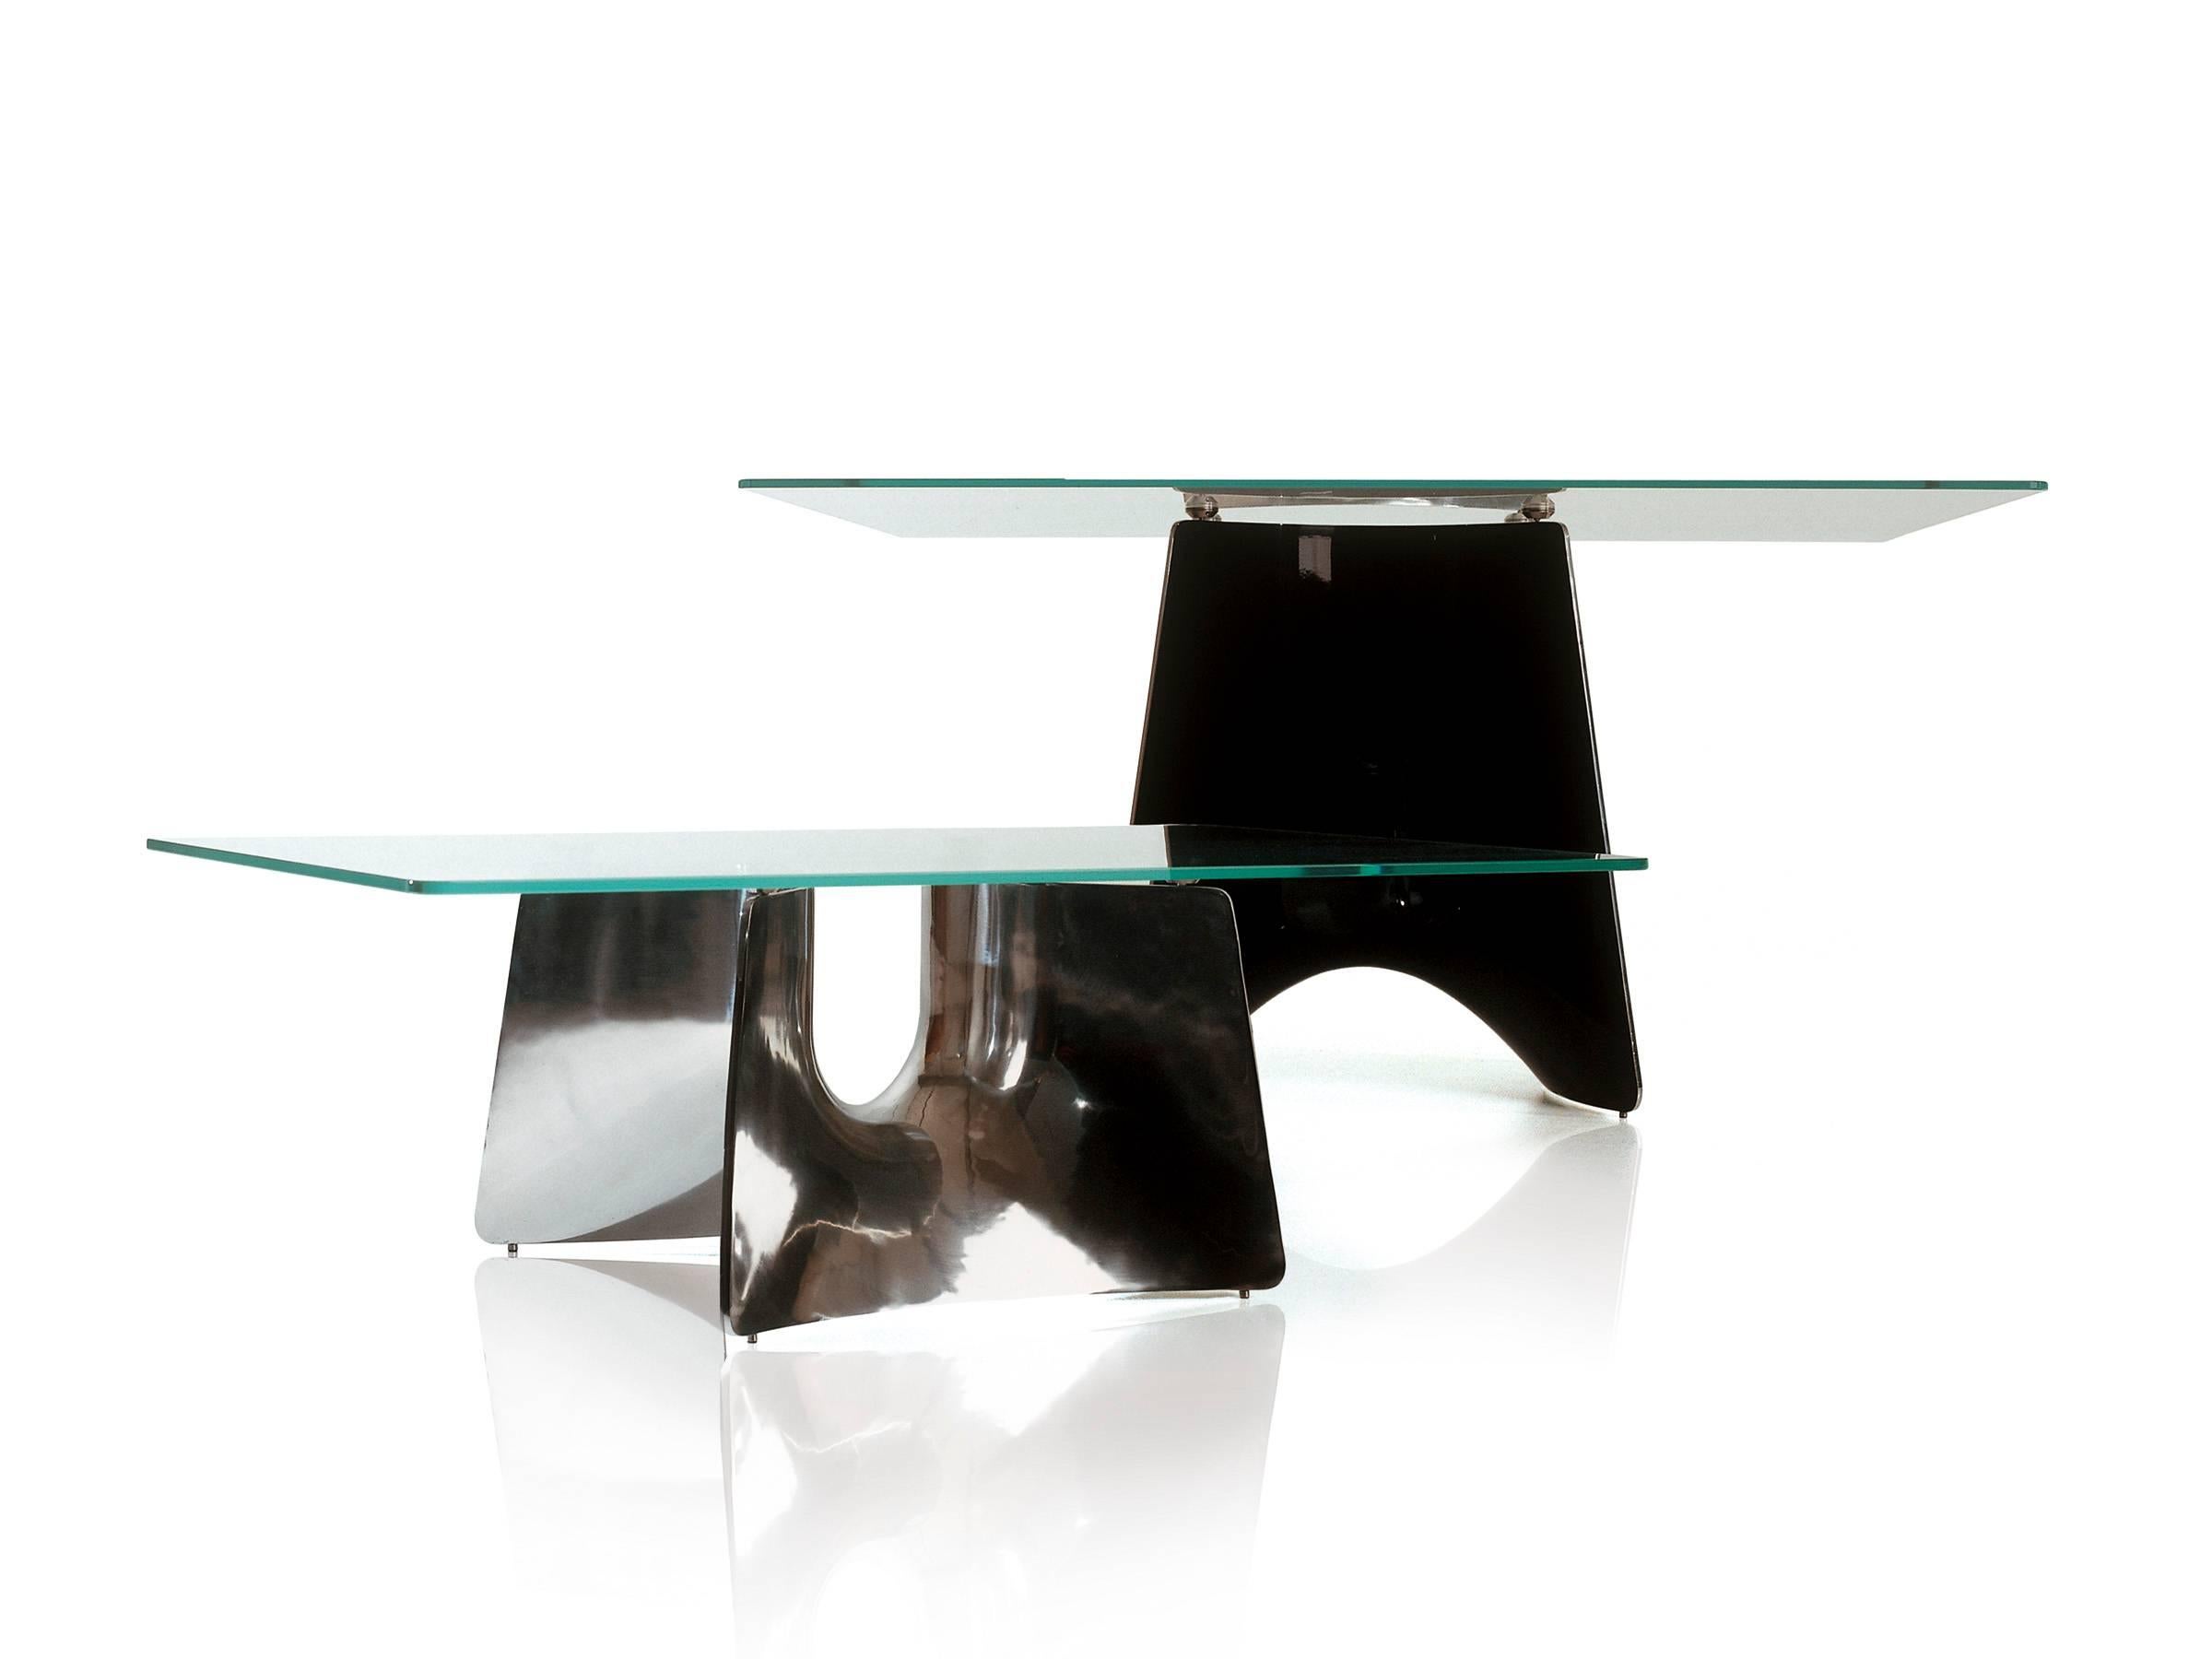 Die Form des Bentz-Tischfußes leitet sich von einem einfachen Profil ab, das entlang einer nach unten und oben gerichteten Bahn geschwungen ist. Auf diese Weise entsteht ein luftiger und skulpturaler Mittelpunkt mit den funktionalen Eigenschaften